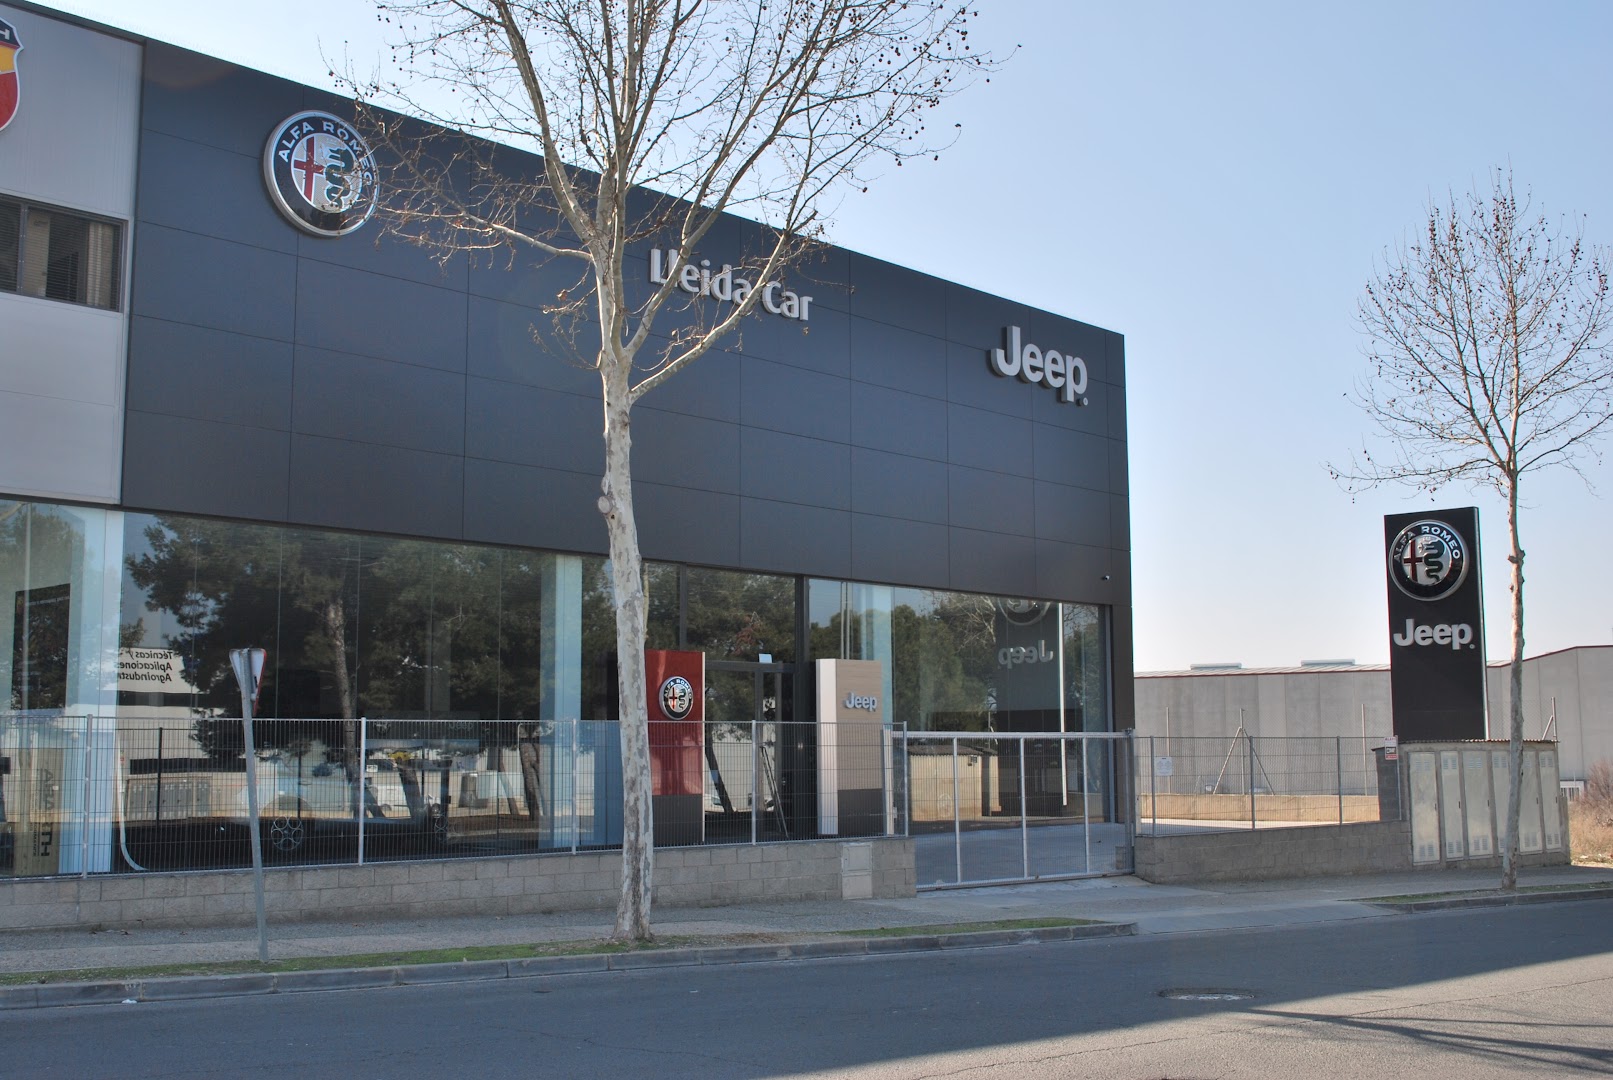 Lleida car - Jeep